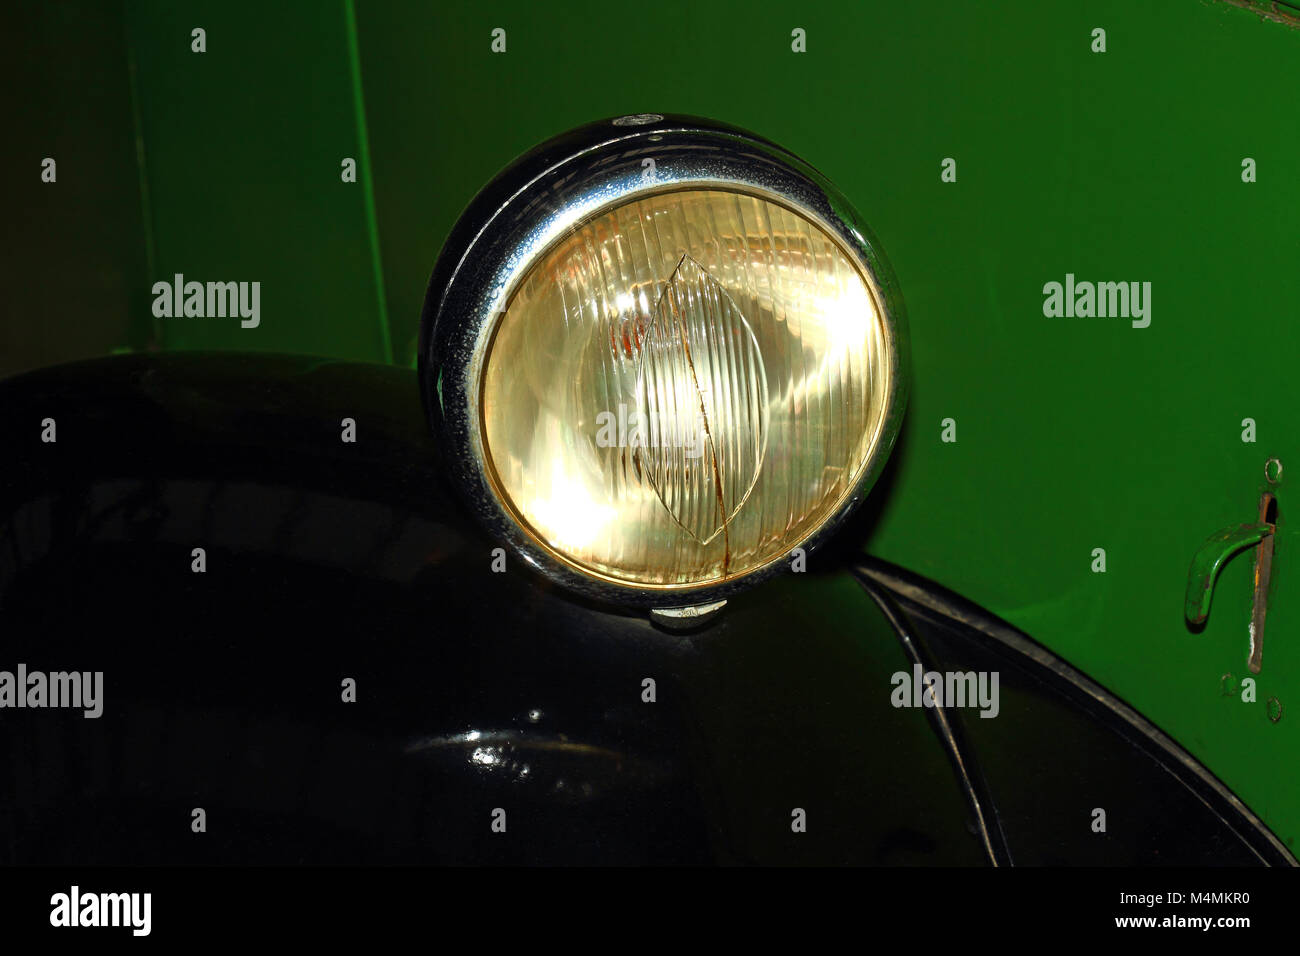 Old vintage phare de voiture sur un véhicule vert Banque D'Images